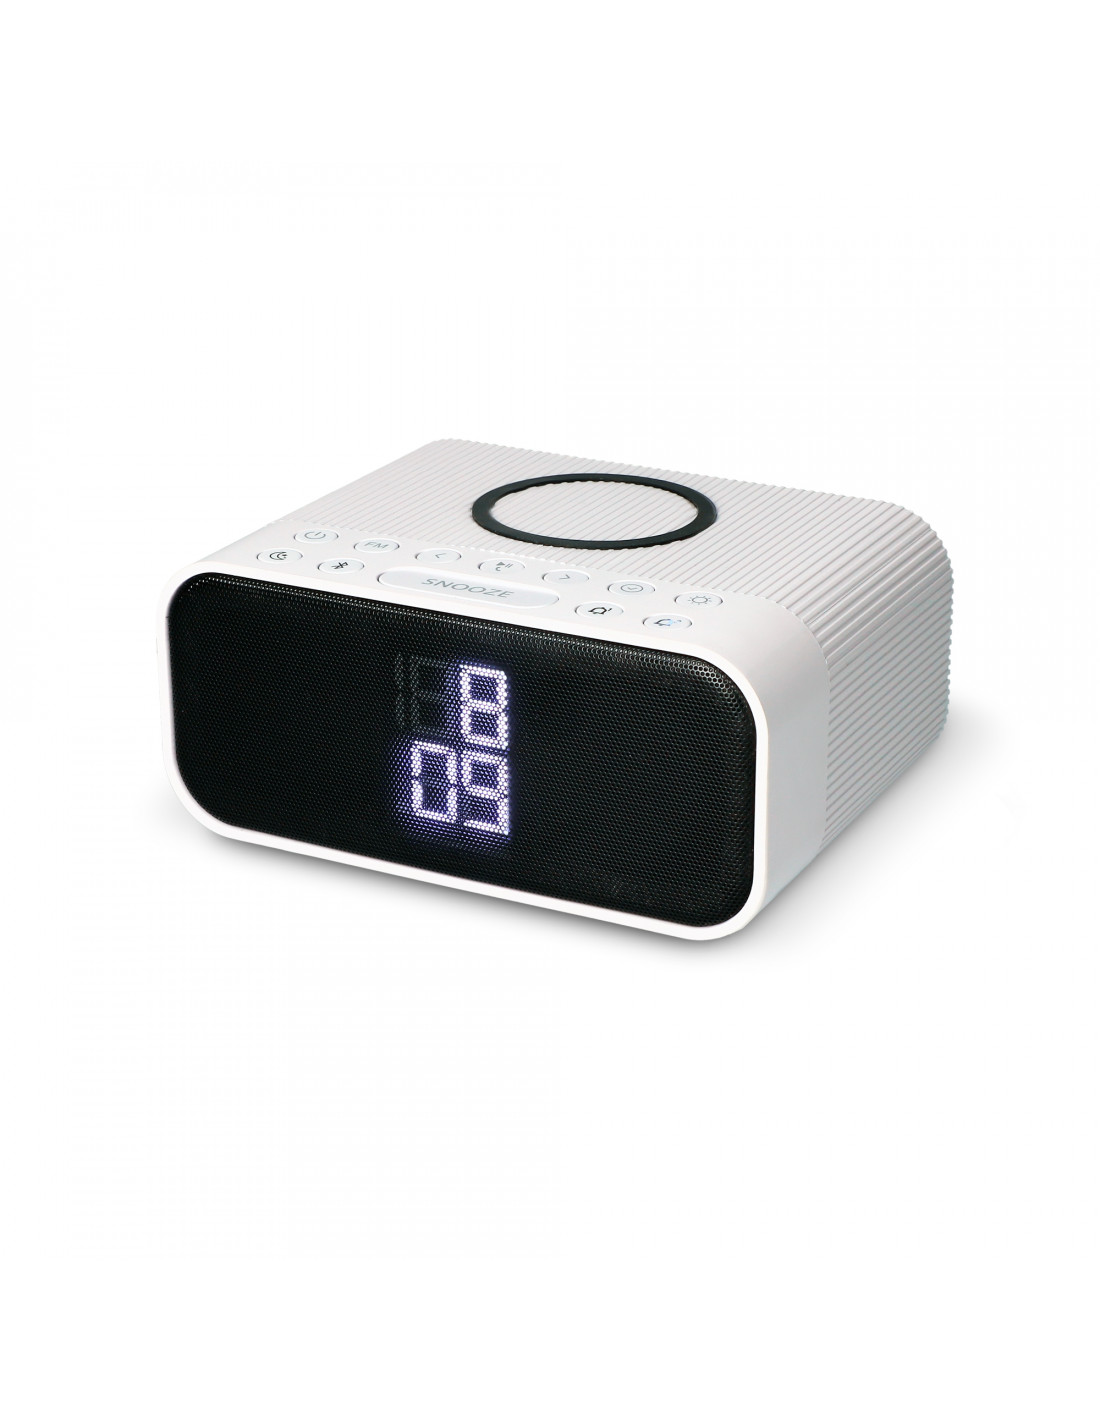 Radio despertador digital, radio FM con altavoz Bluetooth, alarma